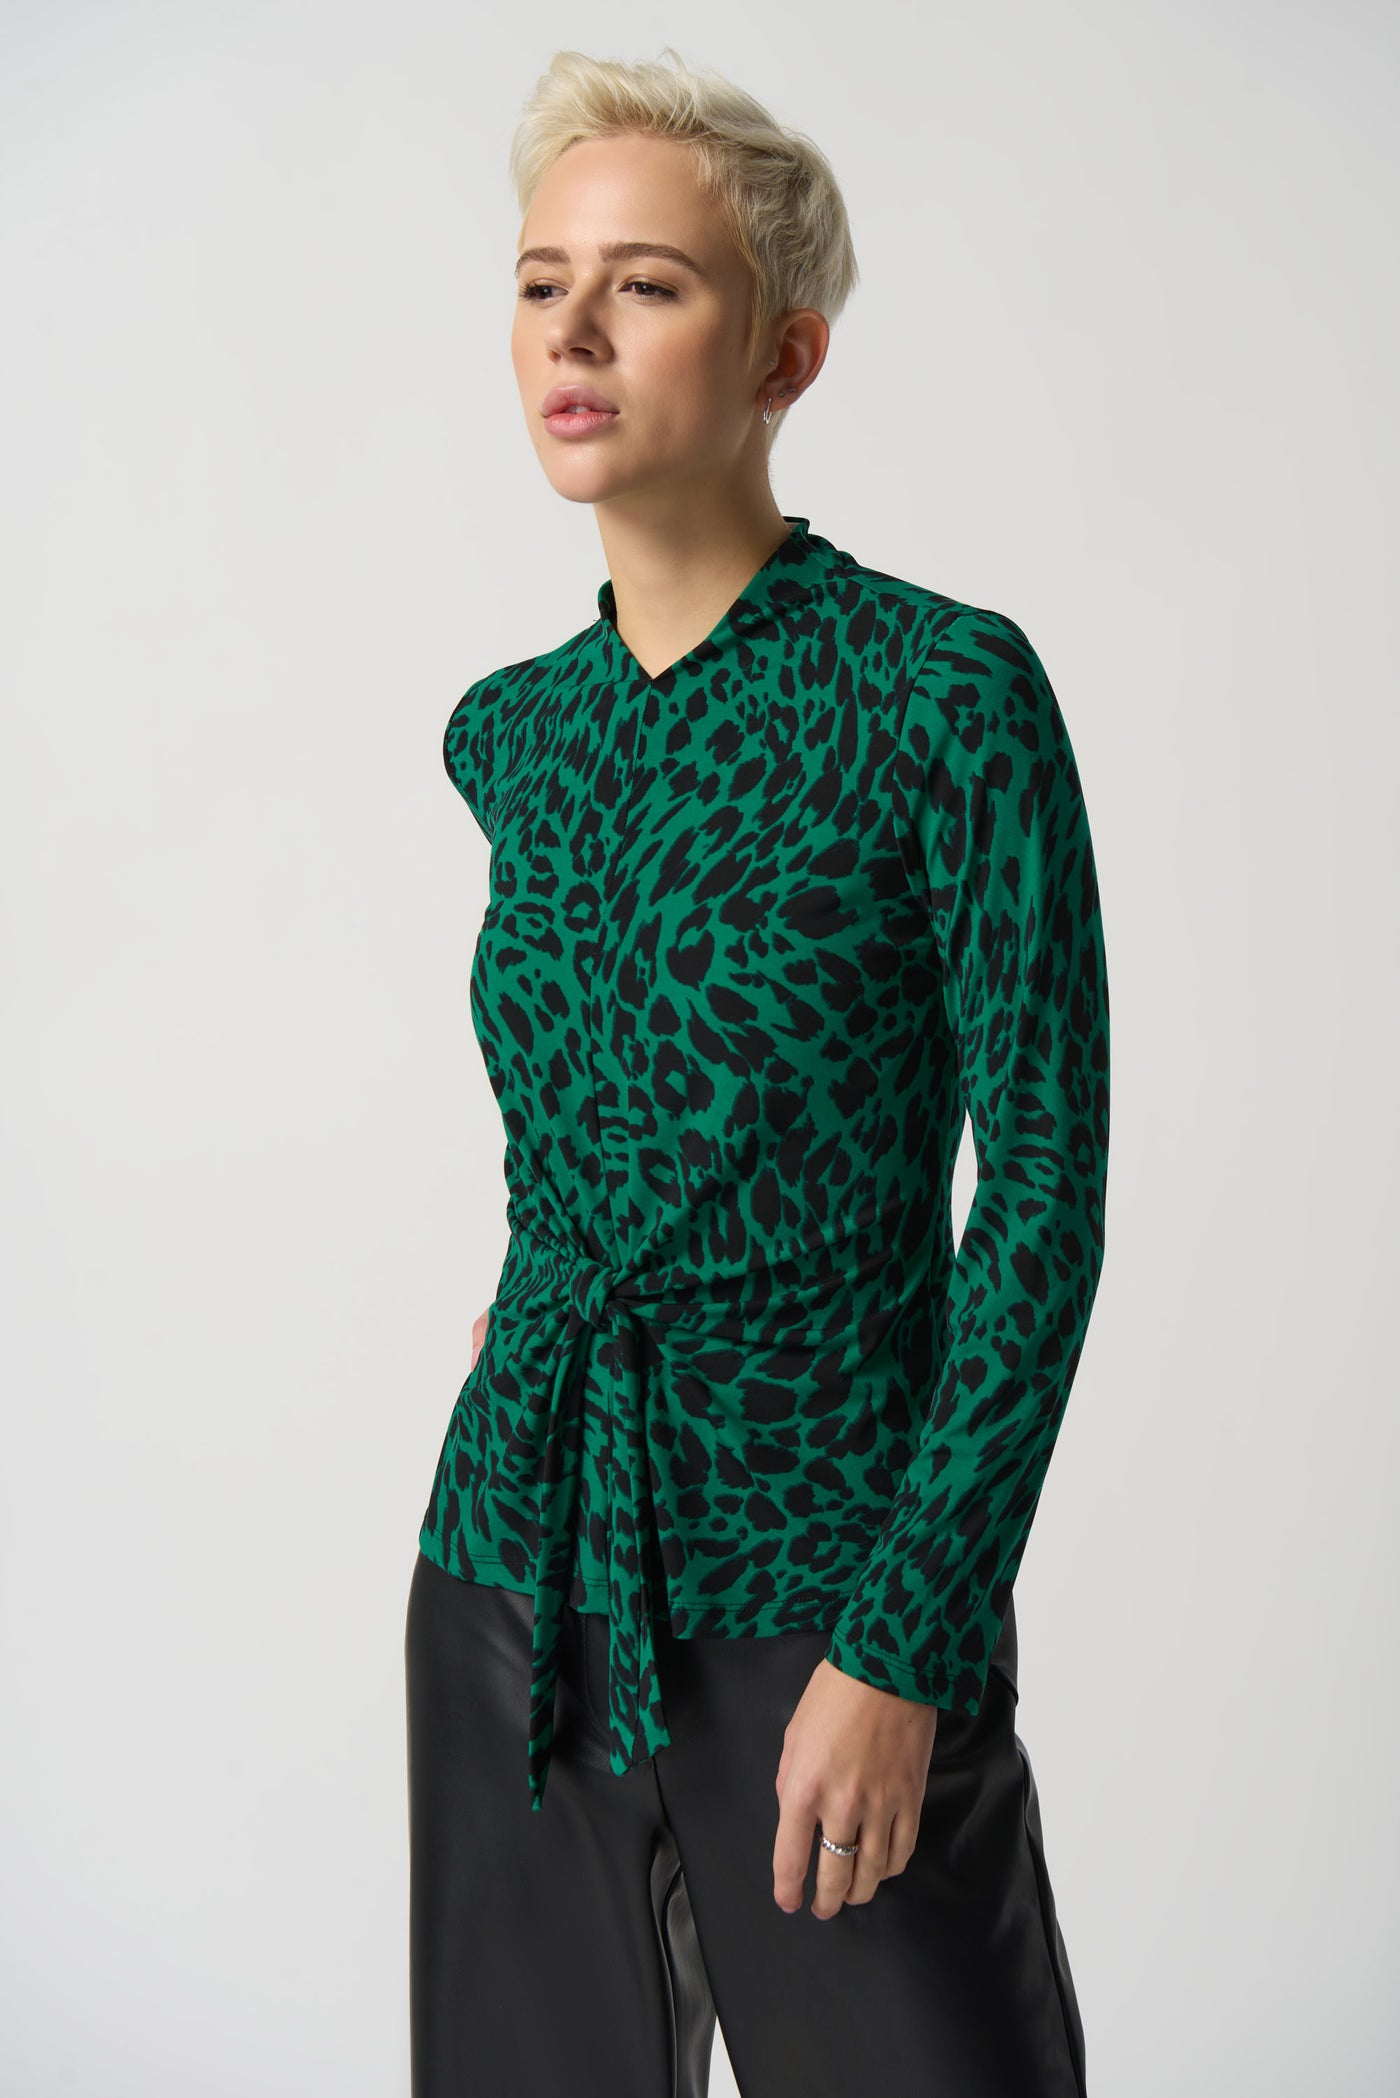 Joseph Ribkoff Black & Green Leopard Print Top